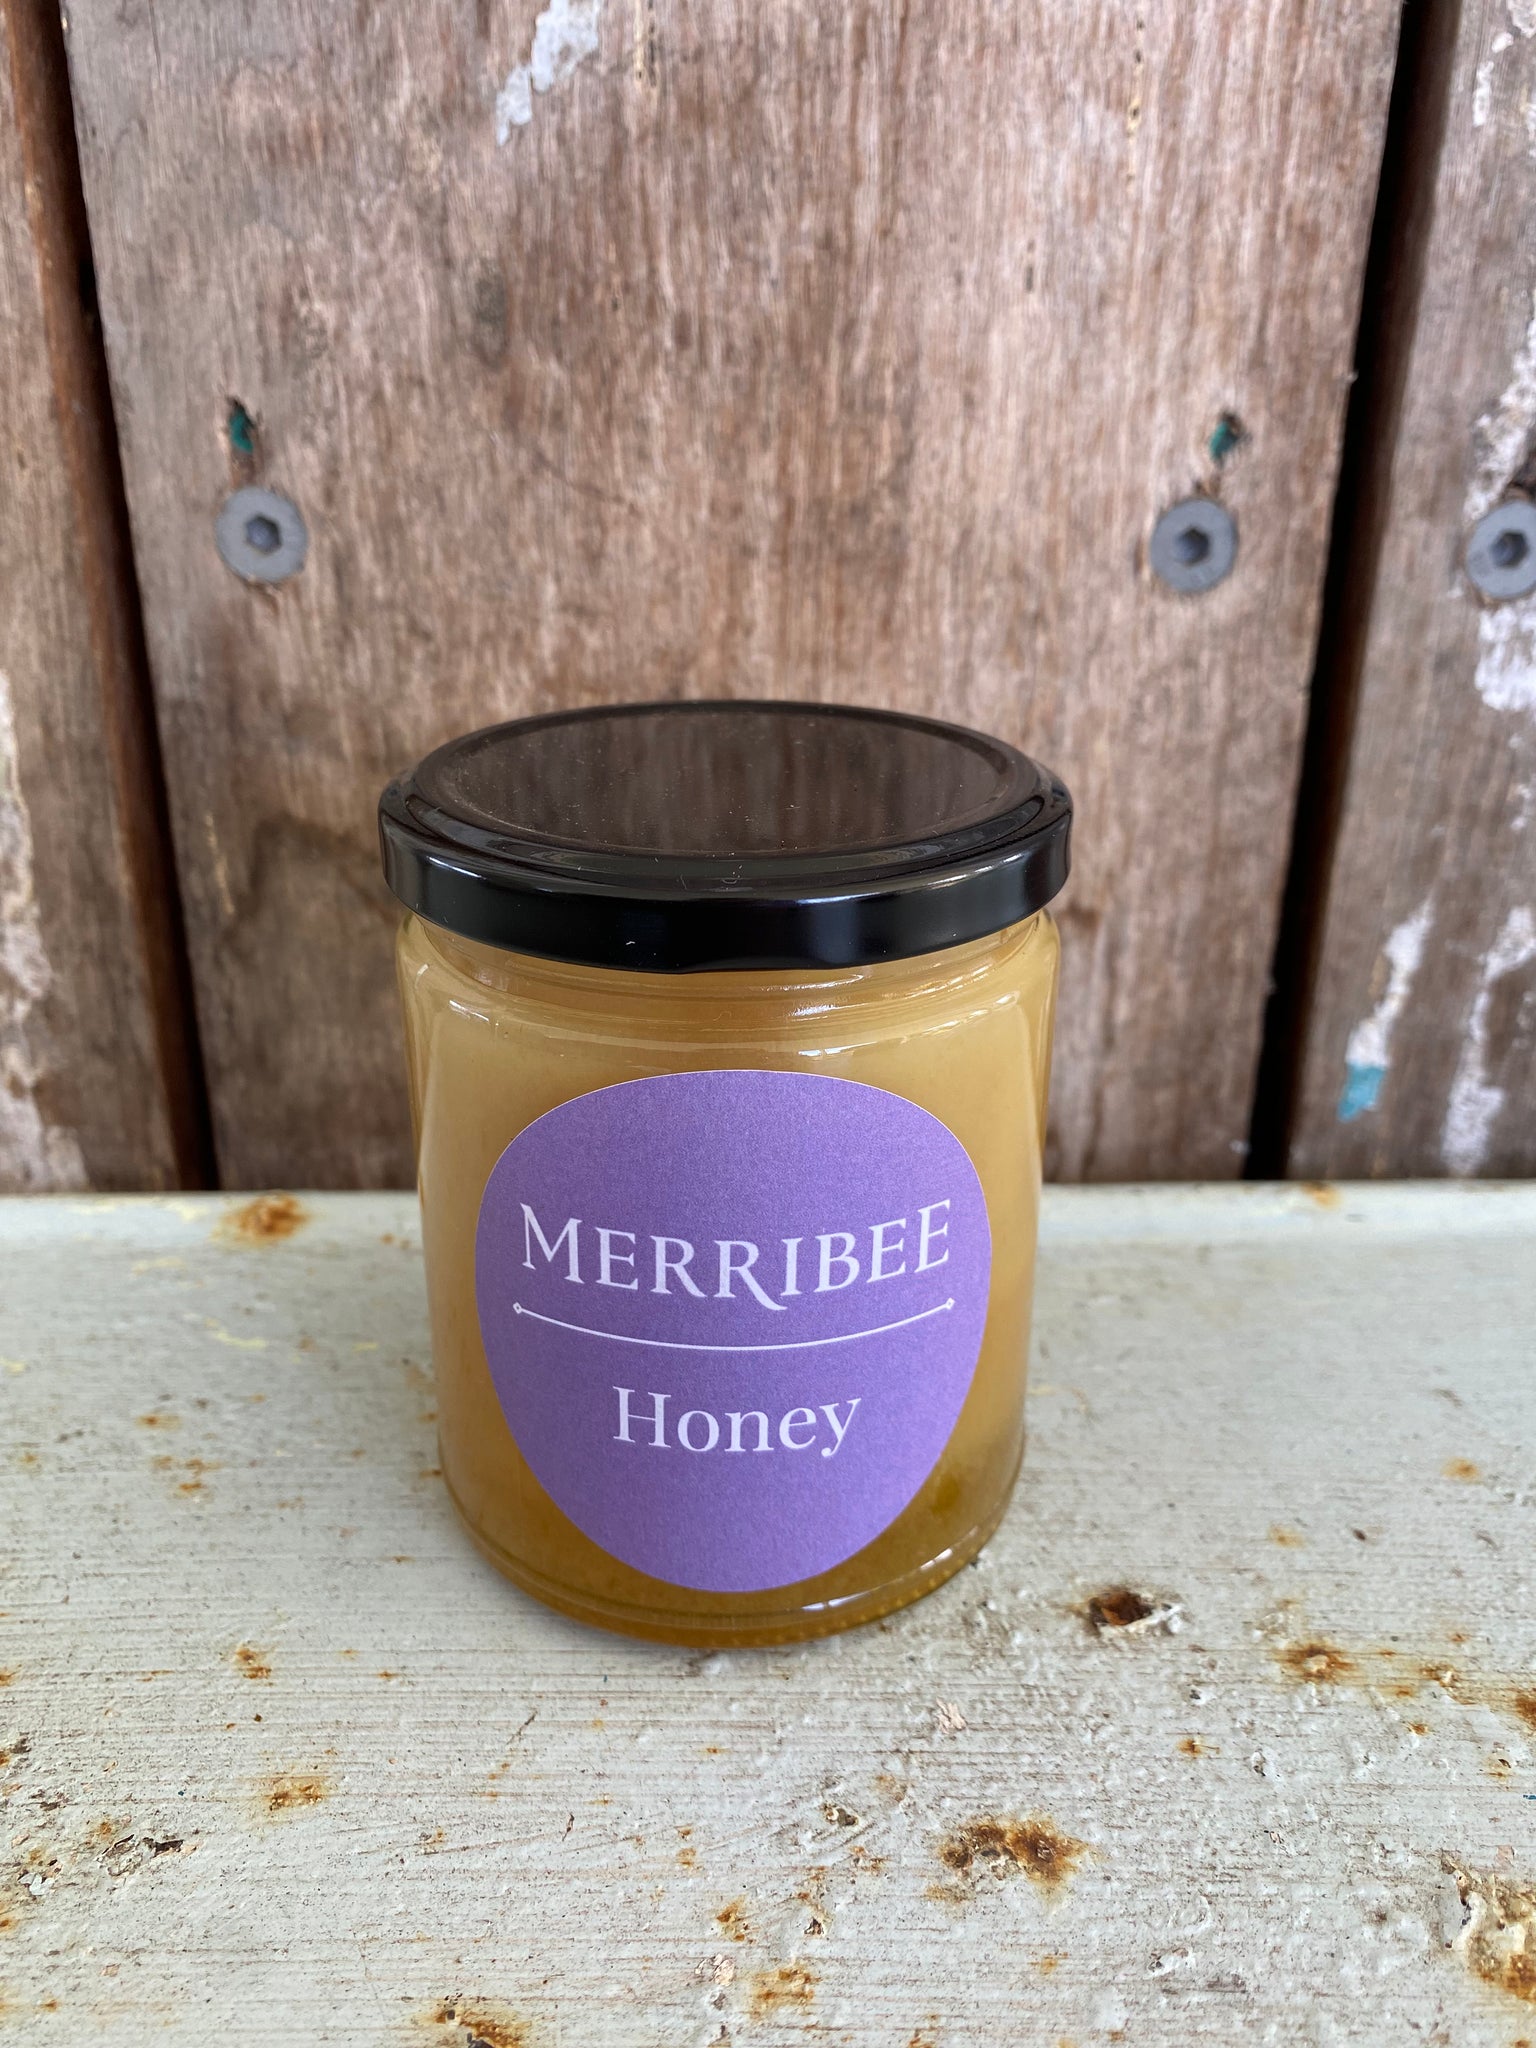 Merribee Honey